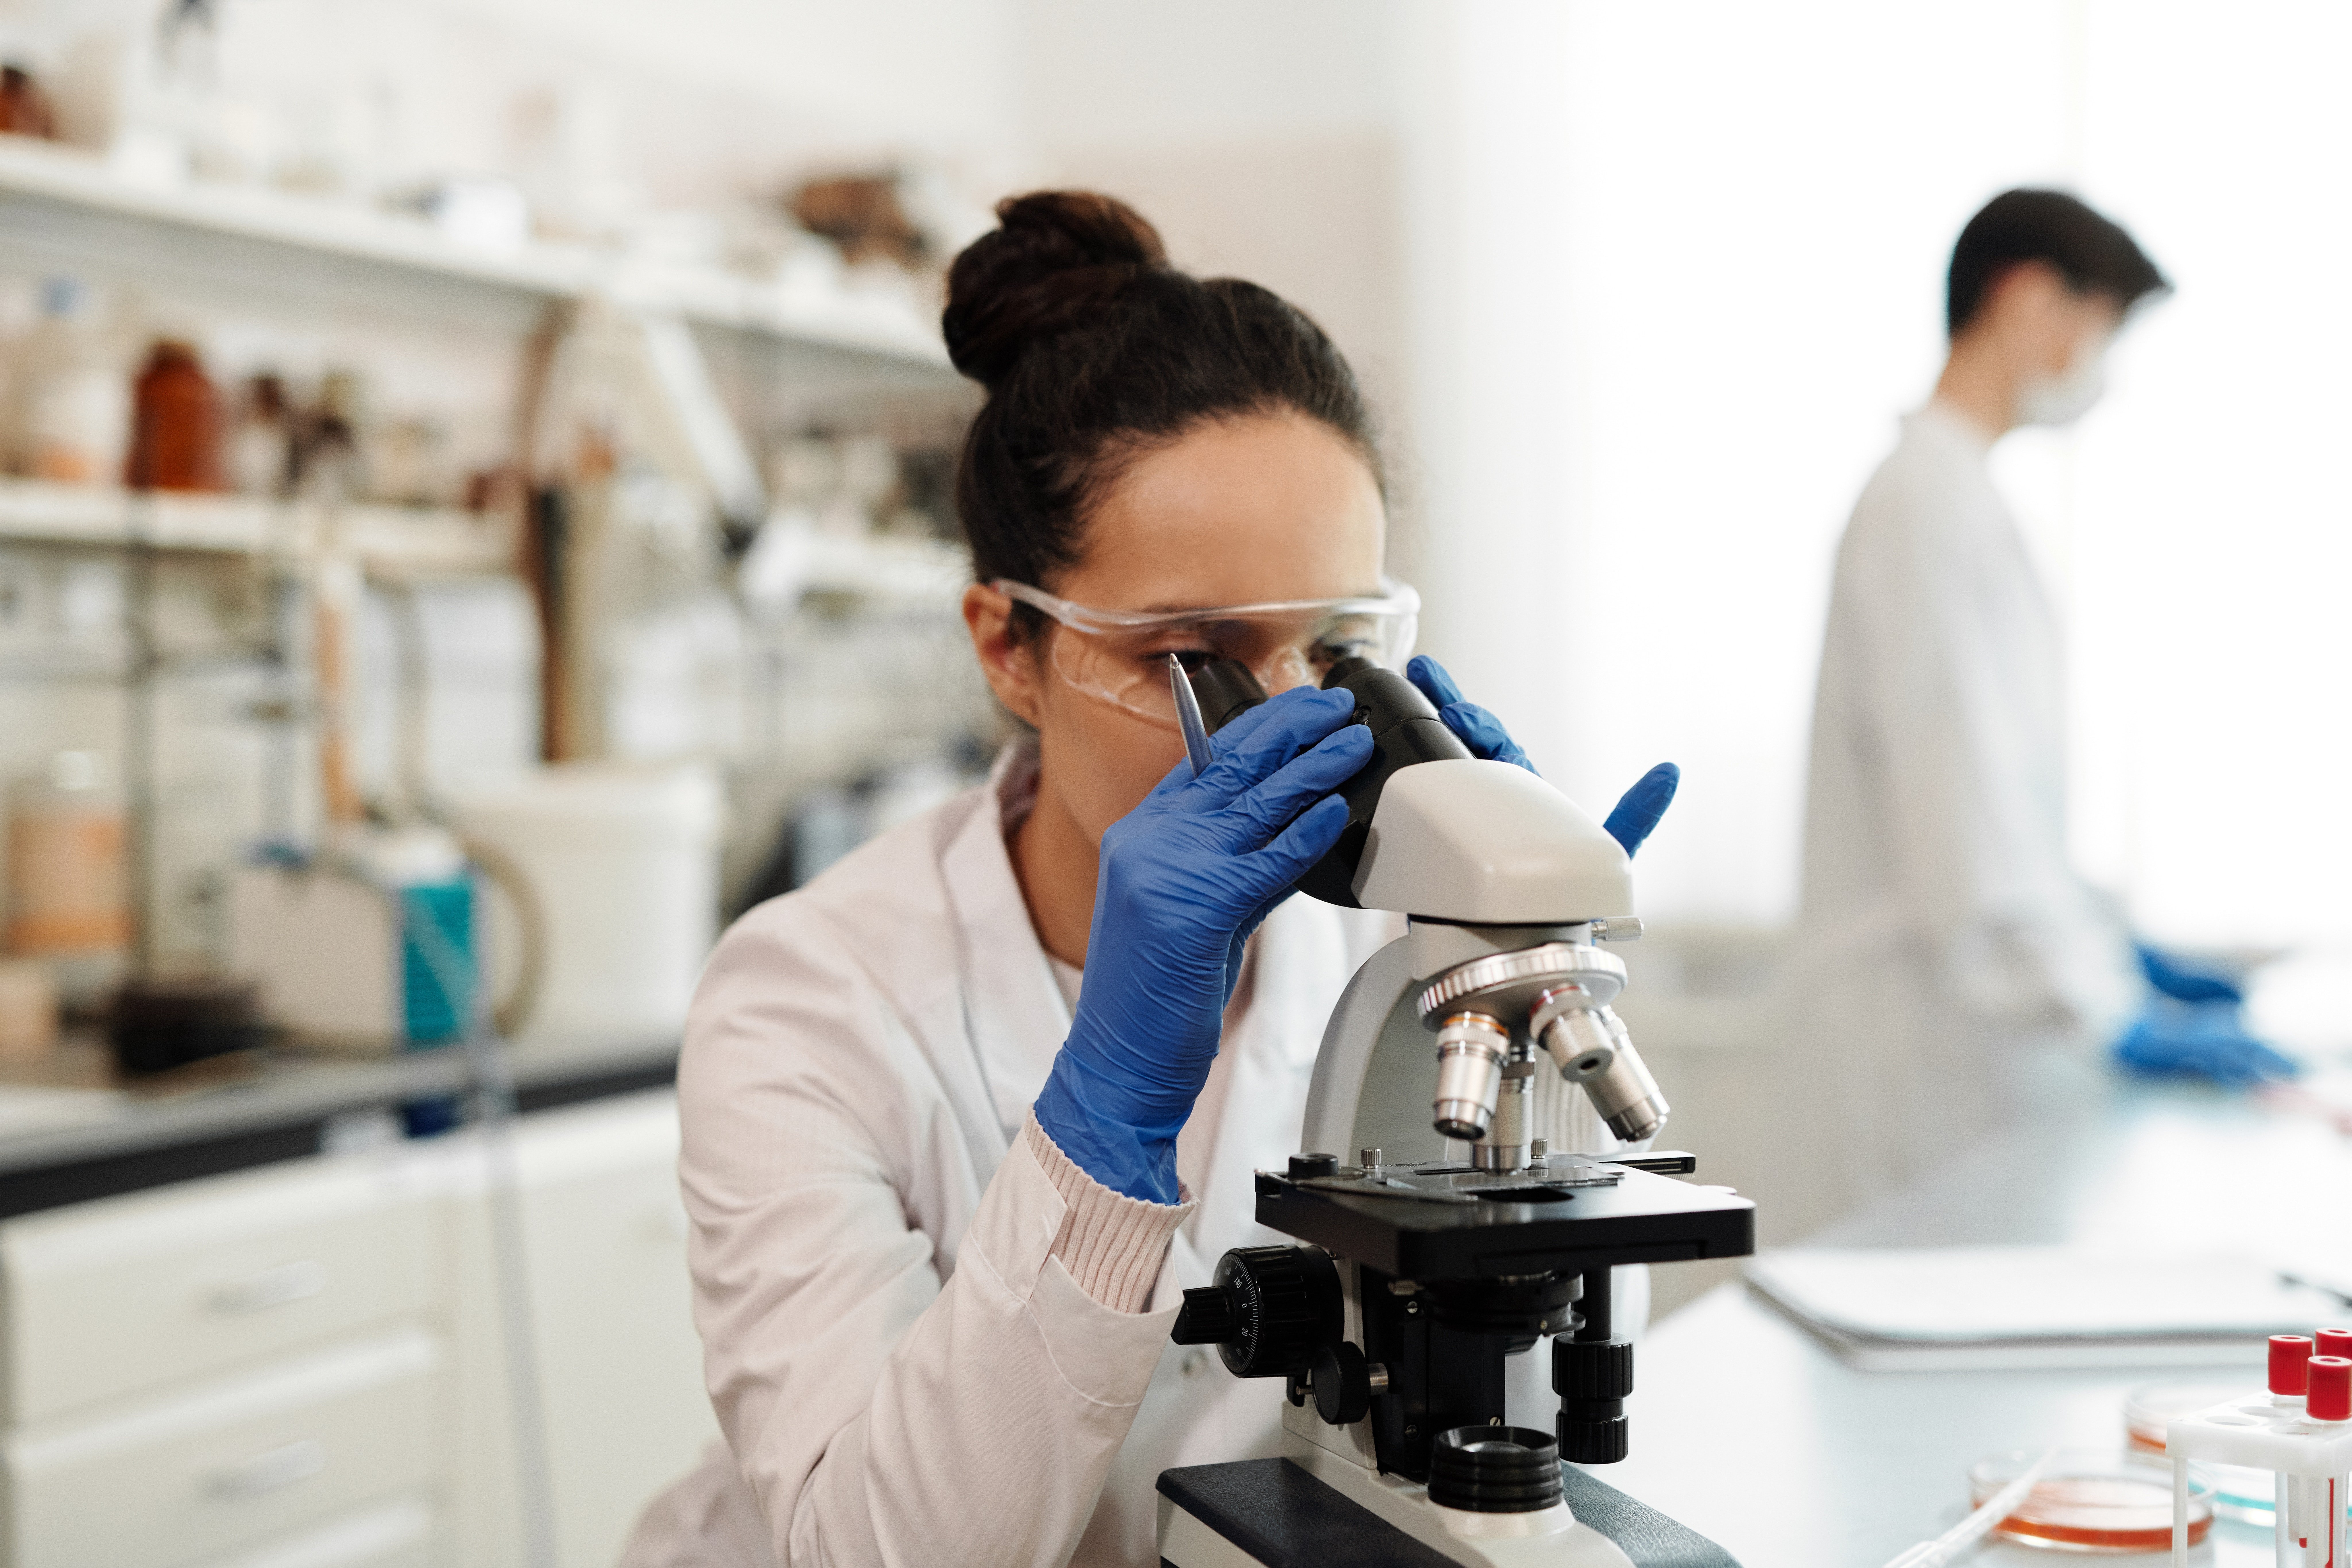 Una profesional observa una muestra en el microscopio en un laboratorio. | Foto: Pexels